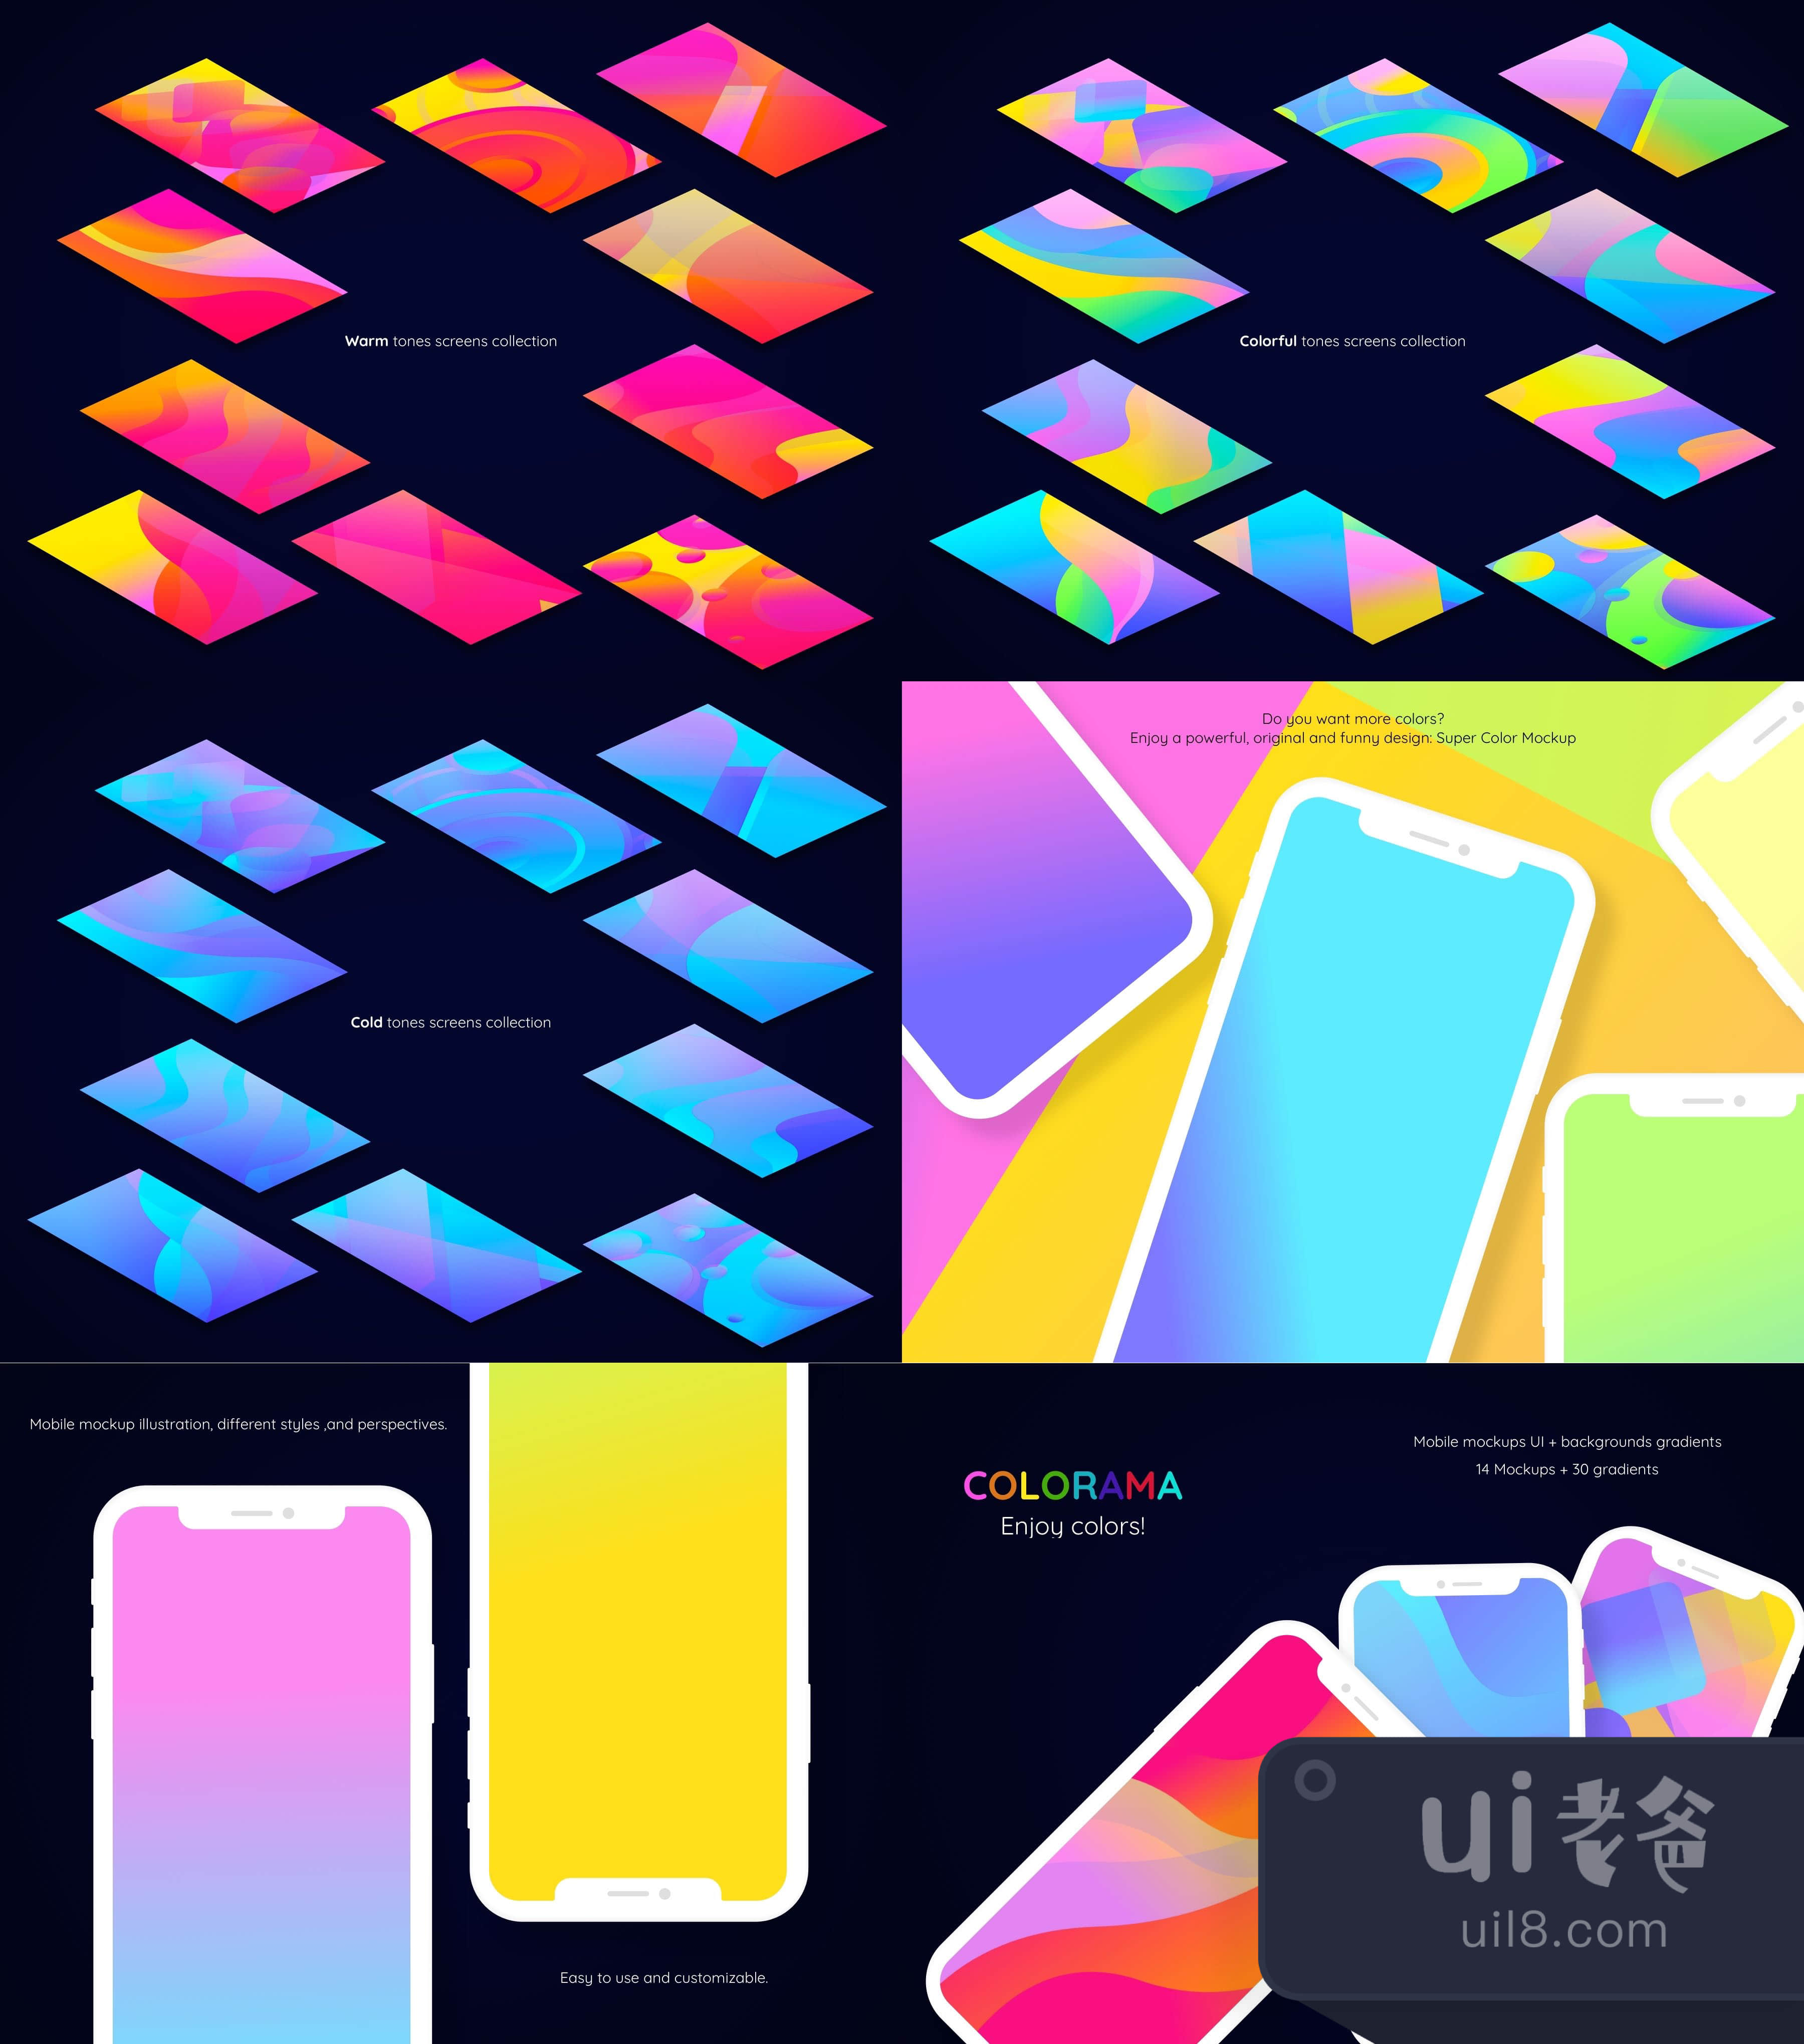 视觉效果图套件 (Colorama UI Kit)插图1